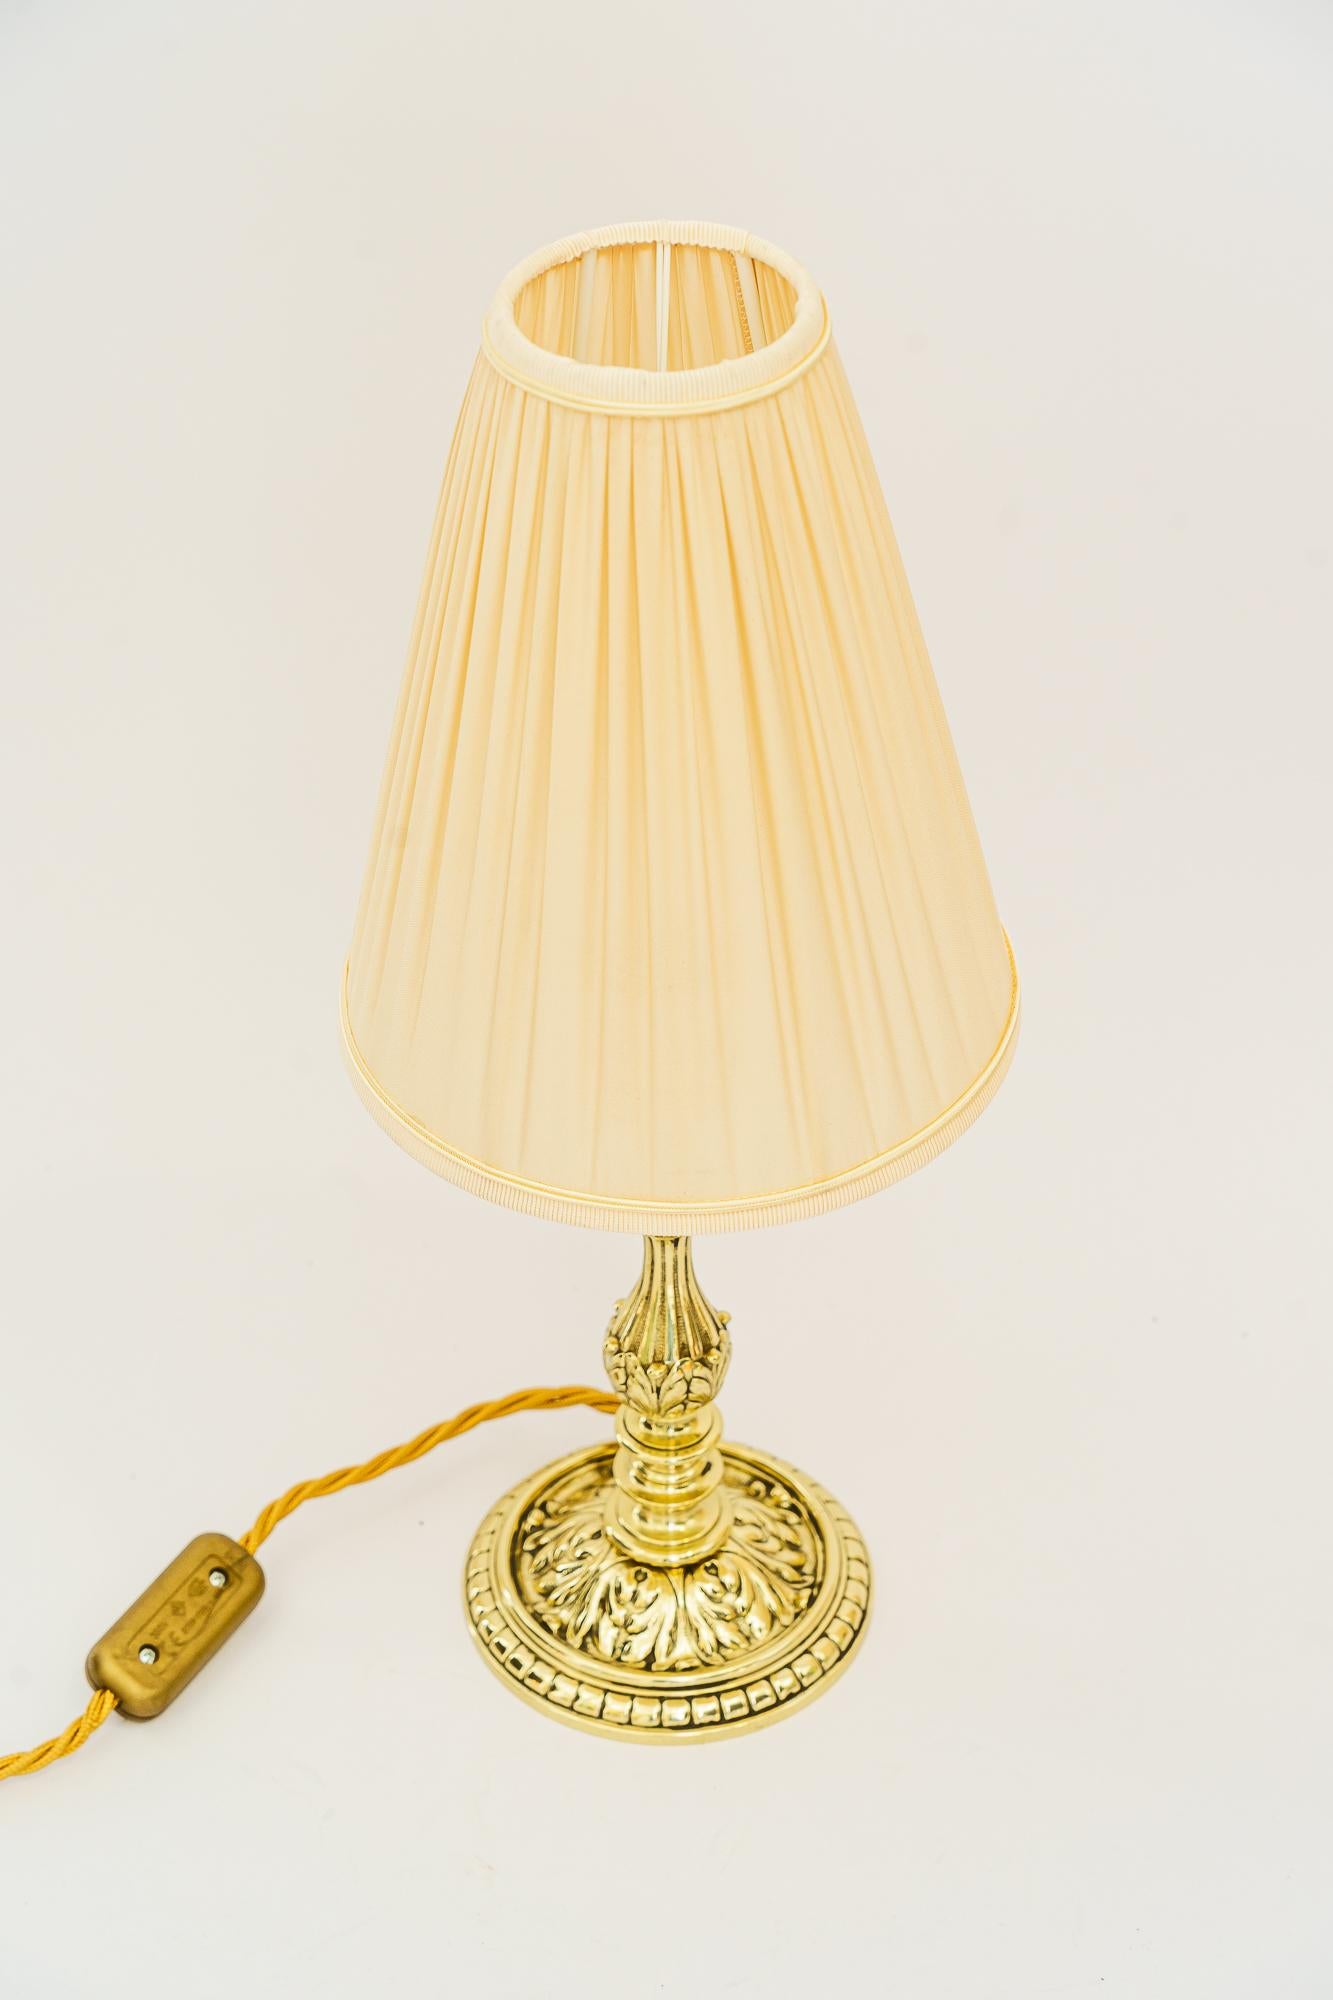 Historistische Messing-Tischlampe mit Stoffschirm, Wien um 1890
Messing poliert und emailliert
Der Stoff wird ersetzt ( neu )